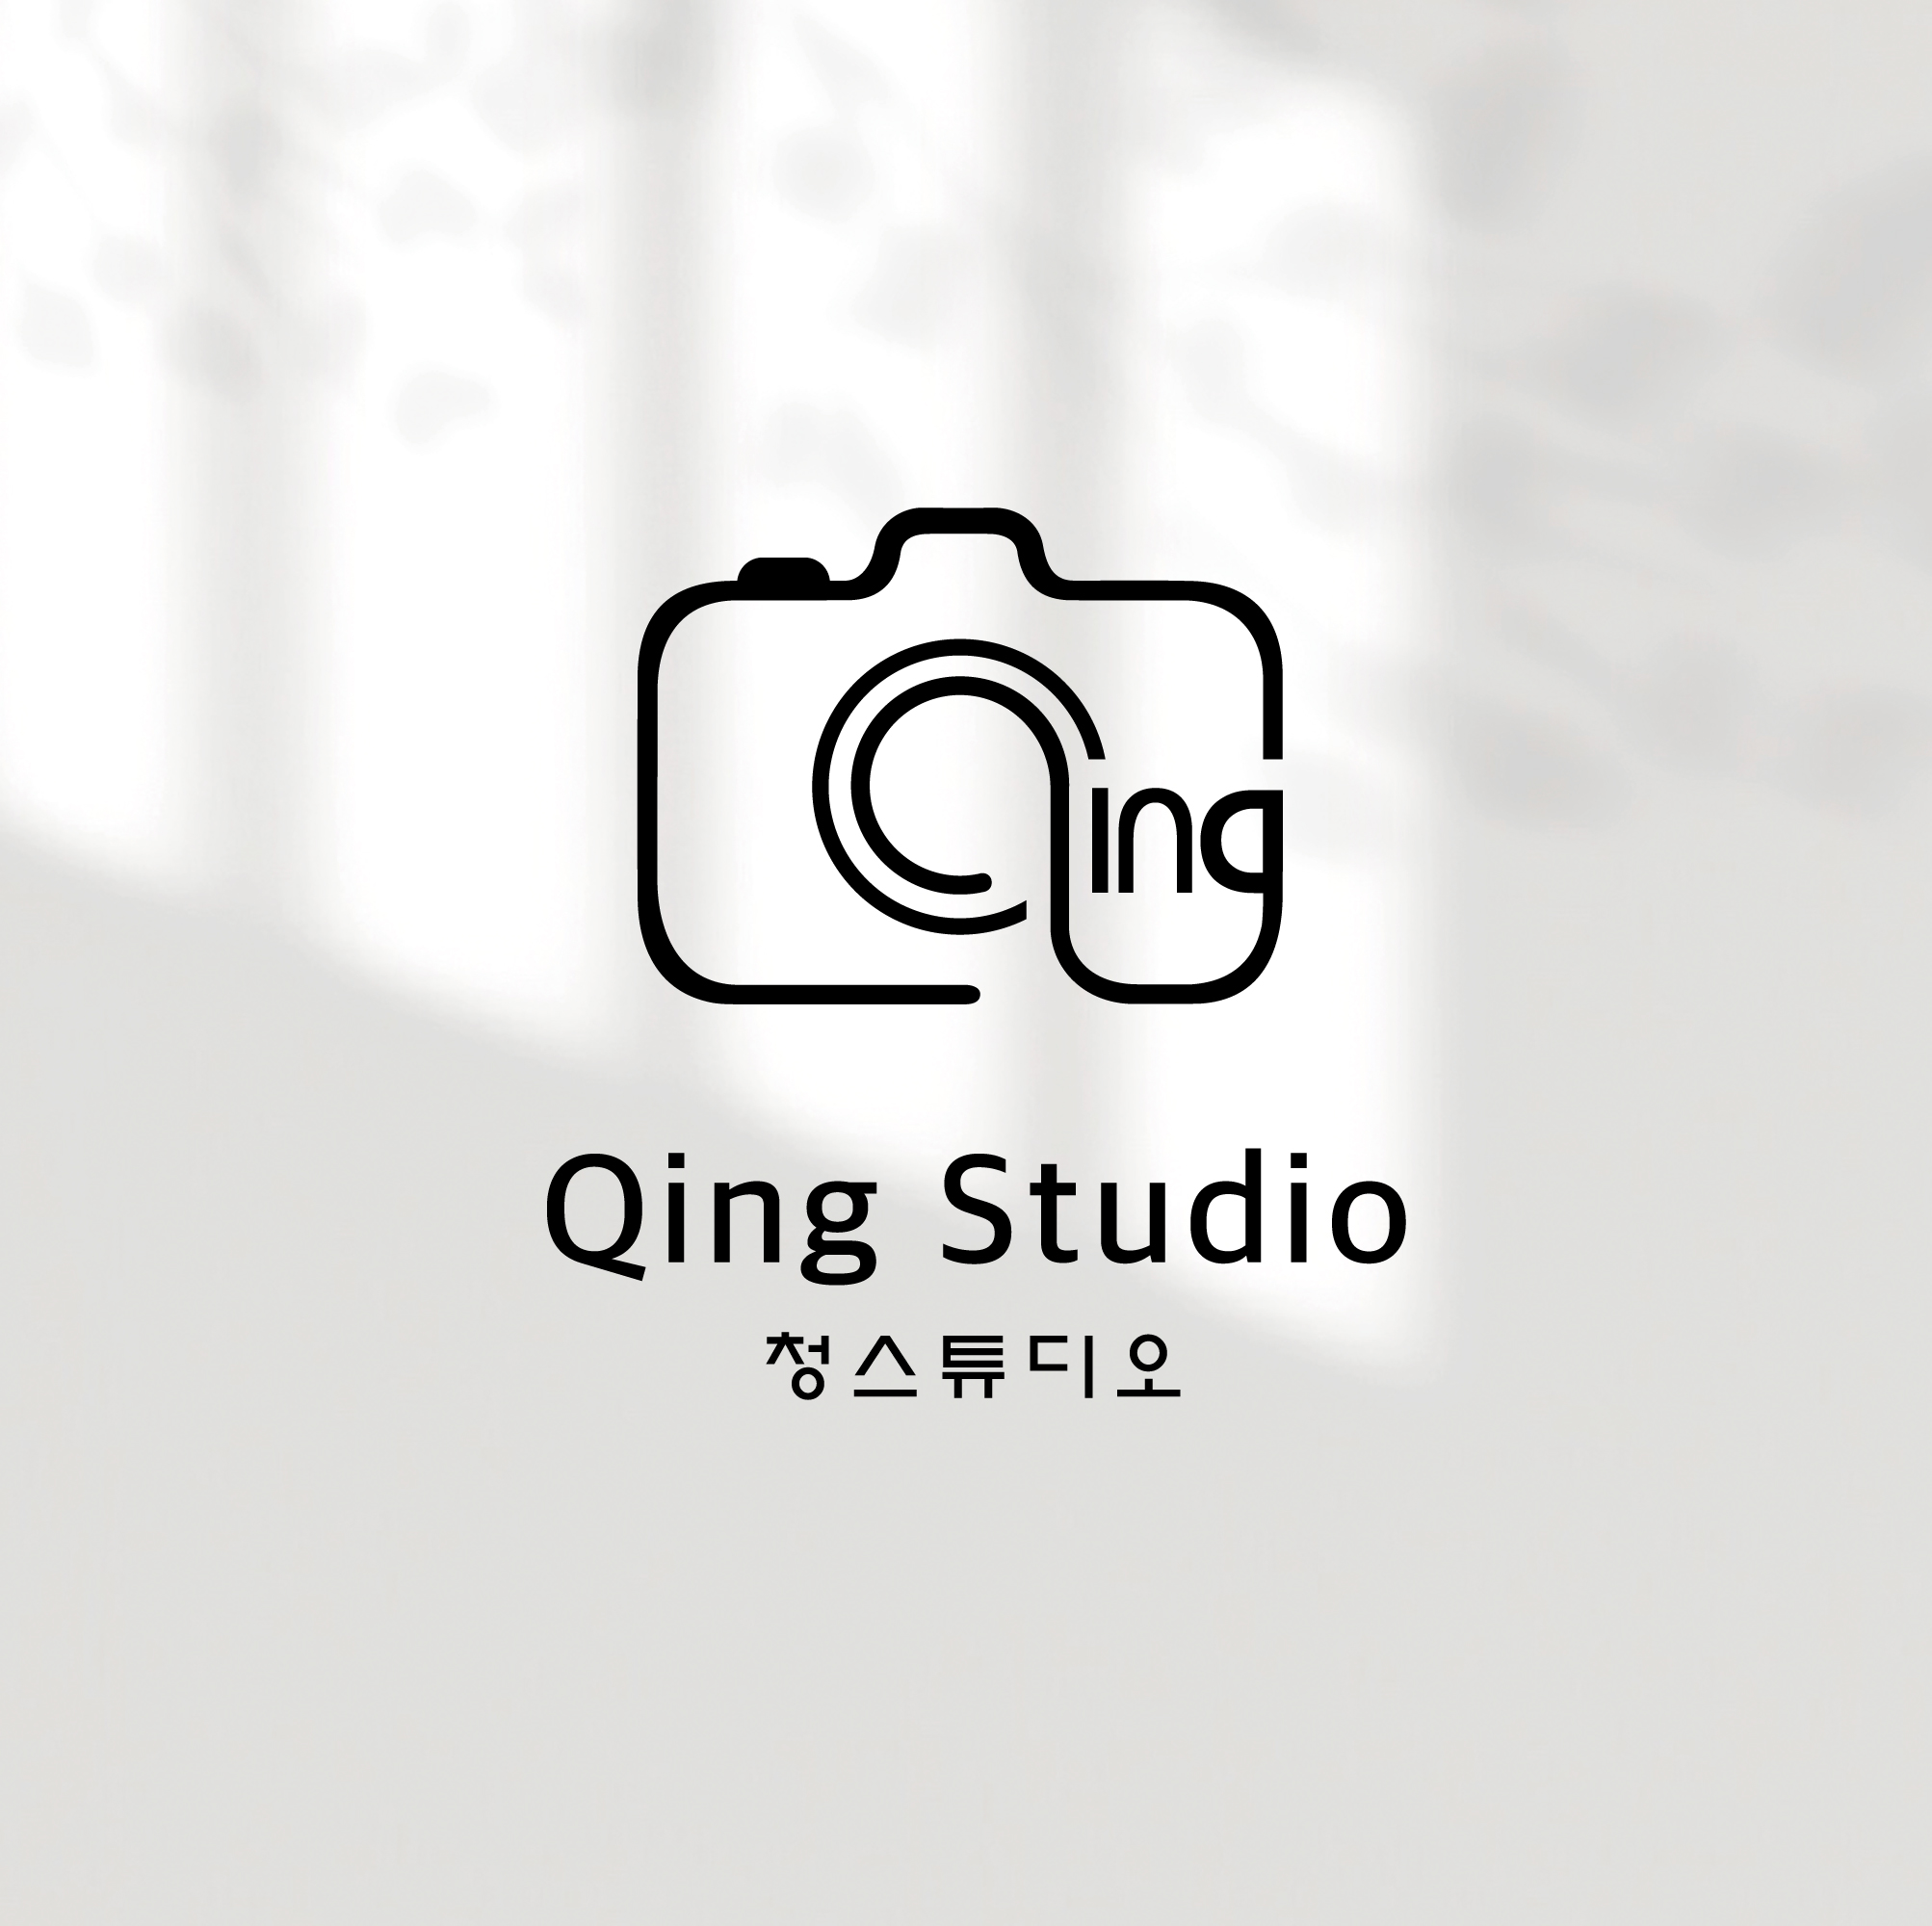 Qing Studio LOGO